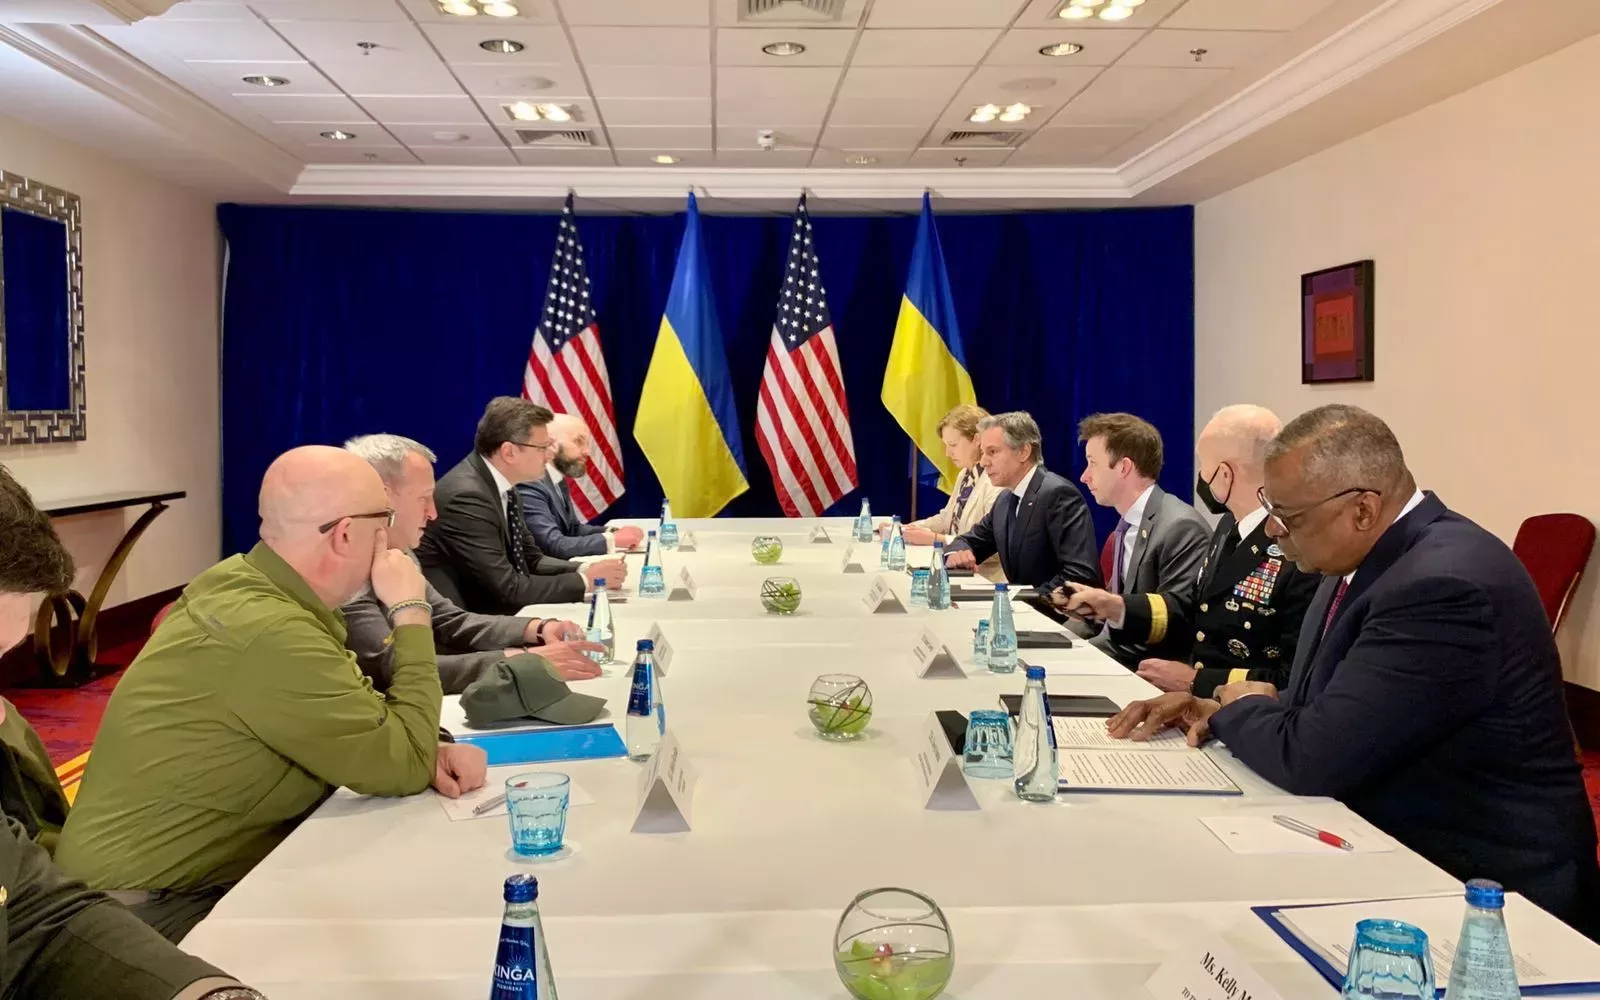 Ukrajinští ministři obrany a zahraničí během jednání s protějšky z USA a Bidenem.